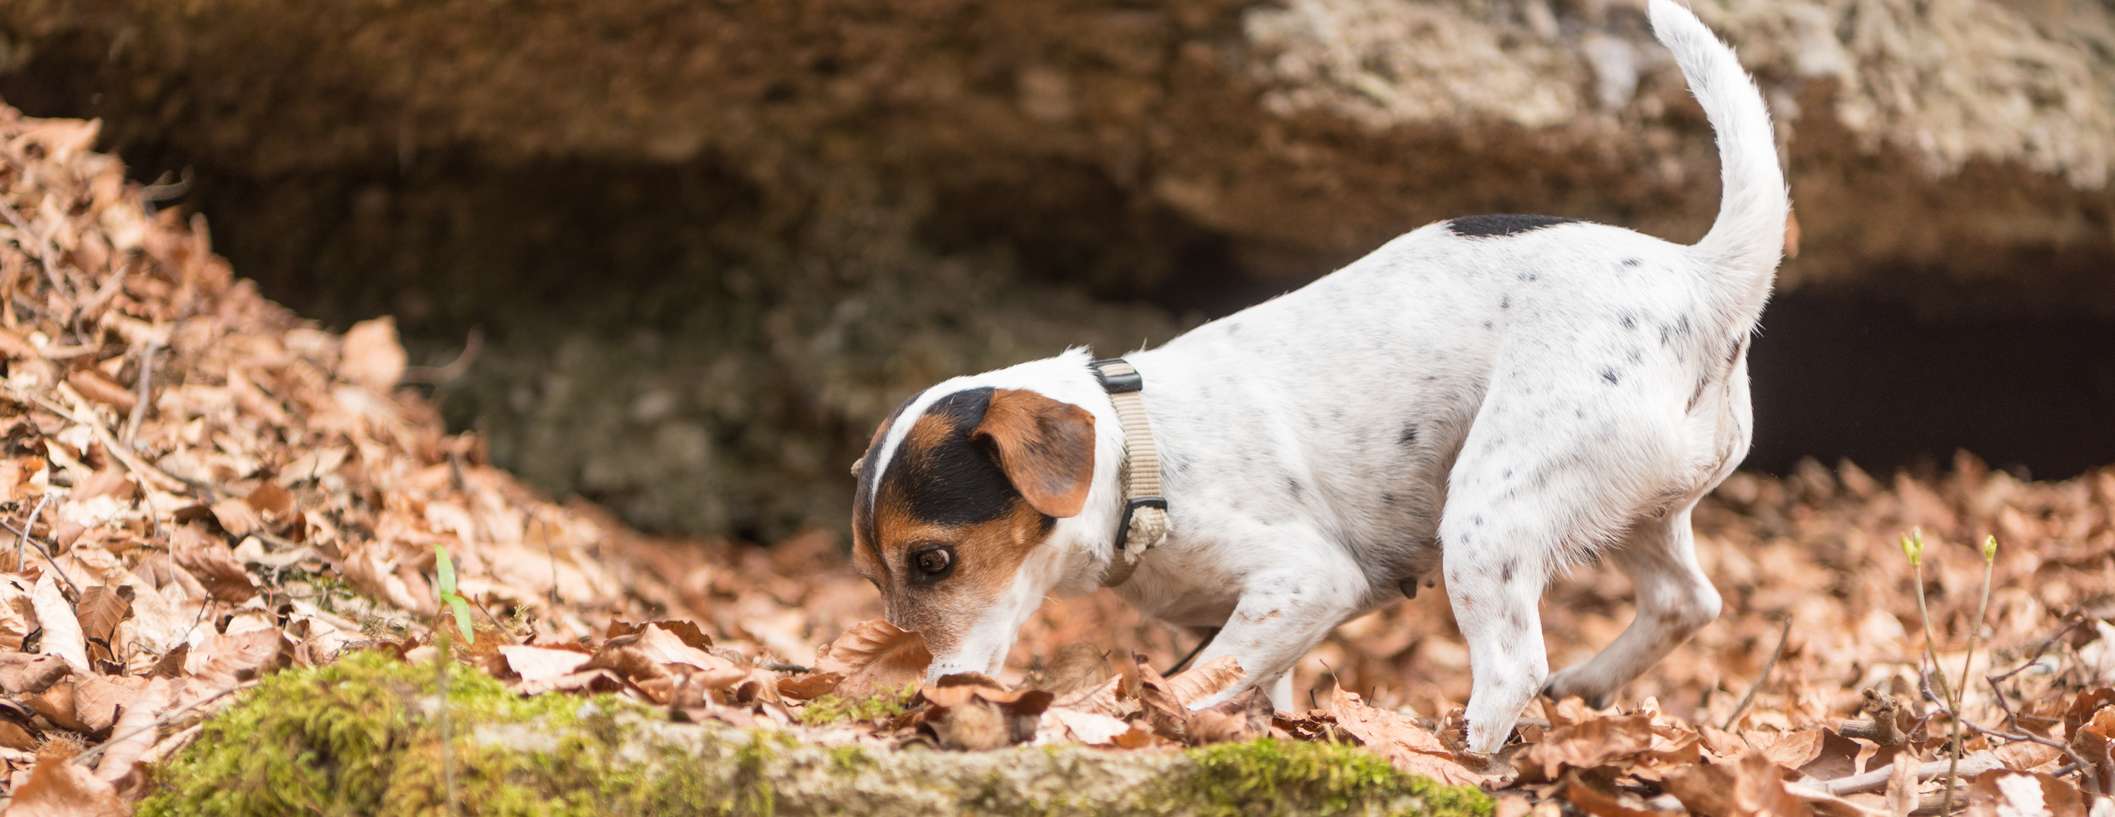 Kleiner Hund schnüffelt im Wald in den Laubblättern